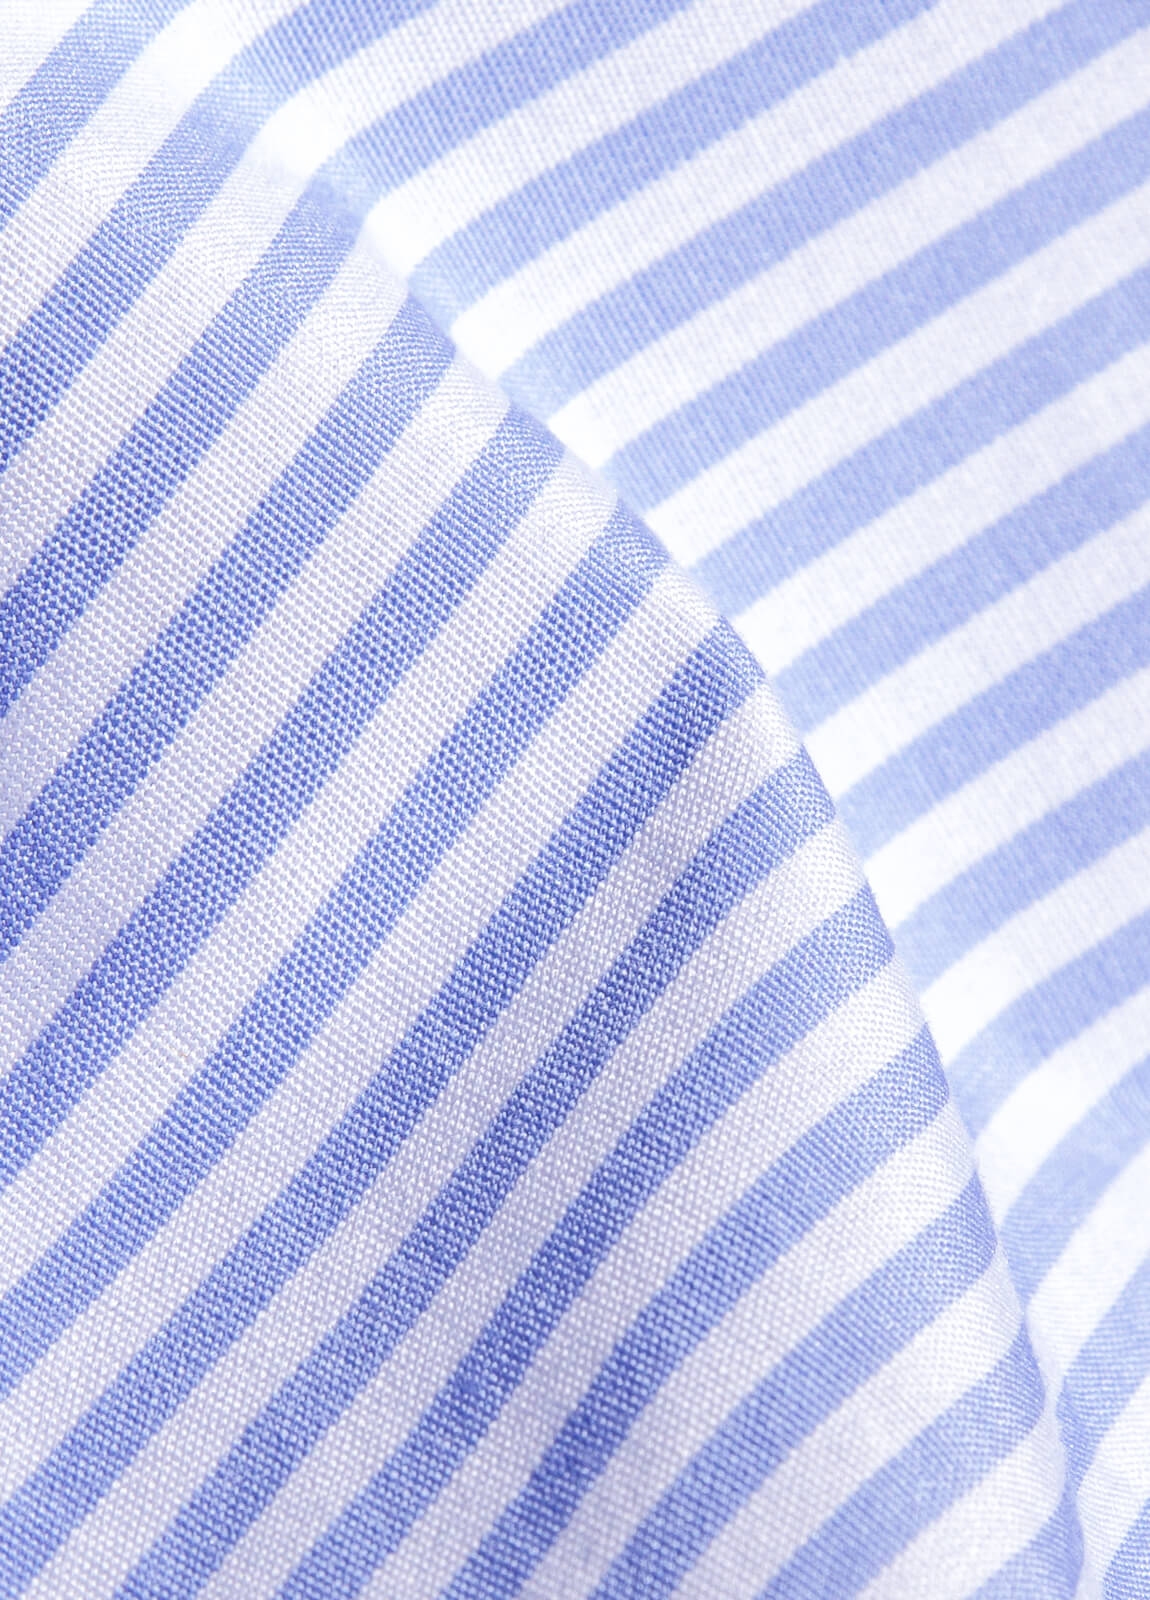 Camisa sport FUREST COLECCIÓN rayas celeste y blanco - Ítem3